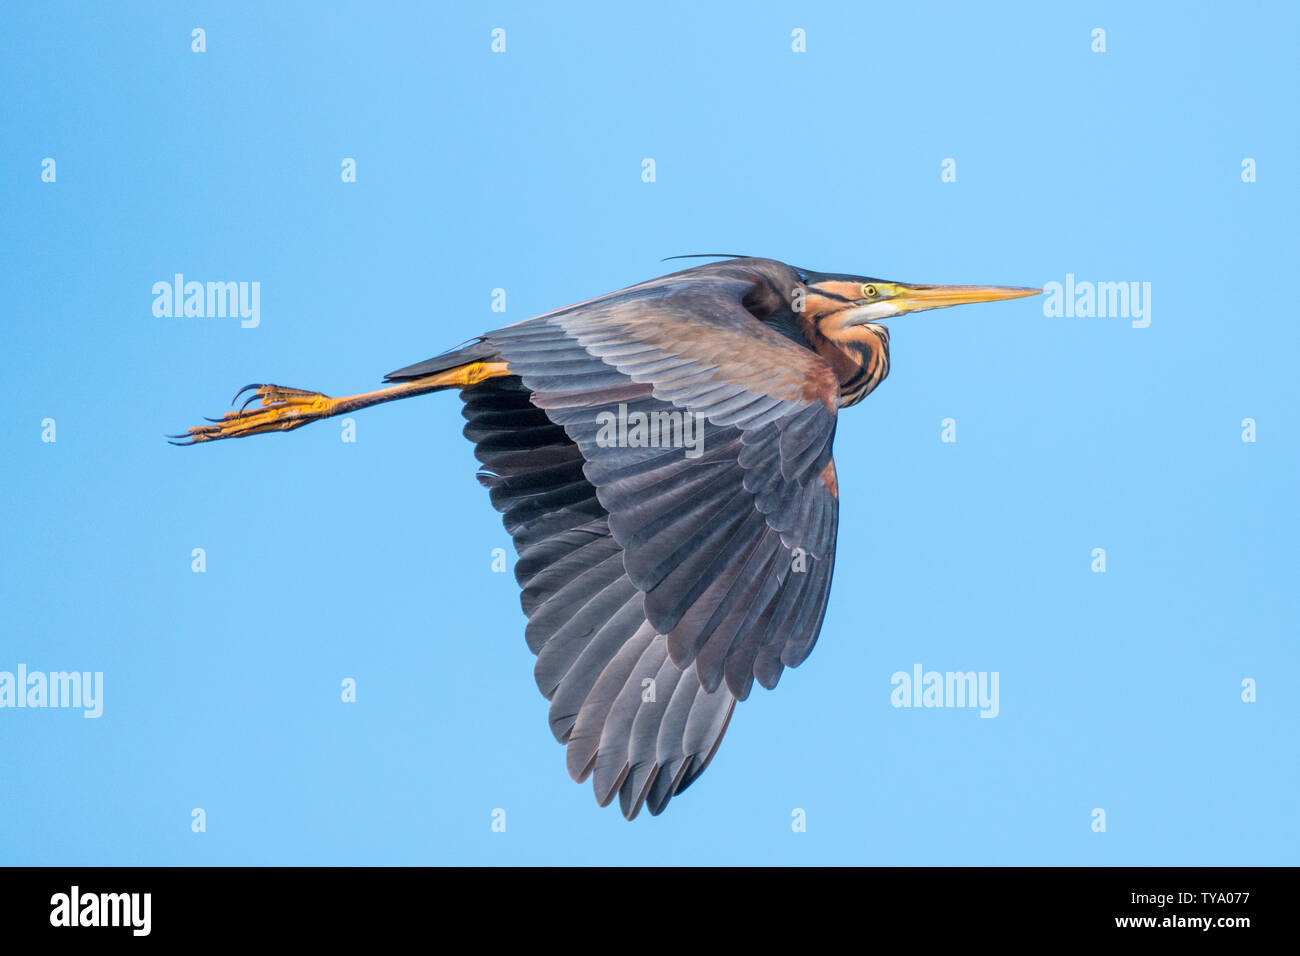 Isolierte Nahaufnahme von einem einzigen Purpurreiher Vogel im Flug - Donau Delta Rumänien Stockfoto